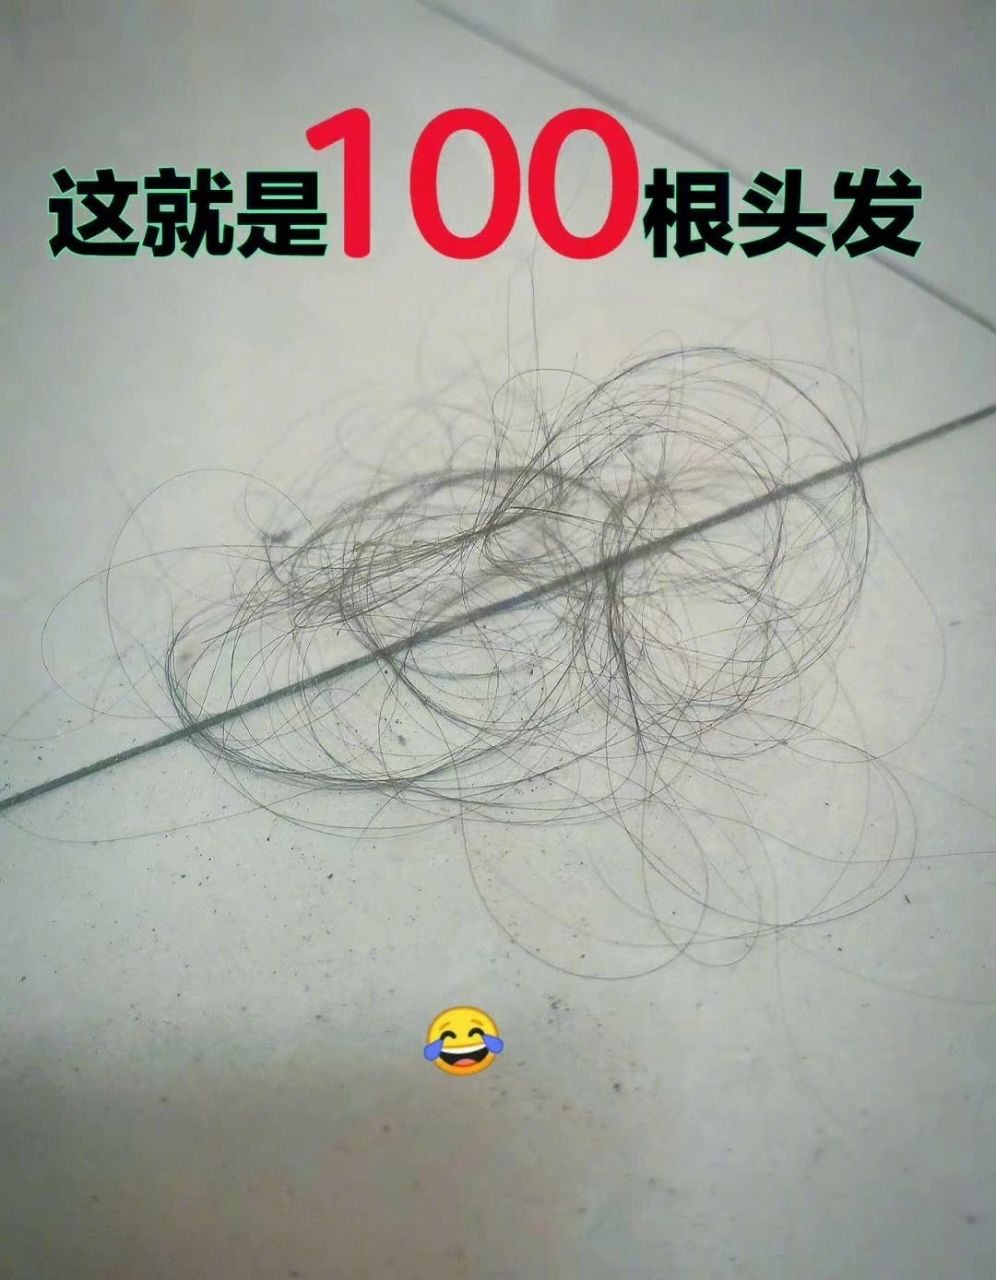 原来100根头发只有这么点 正常人一天掉100根以内头发是正常,超过可能